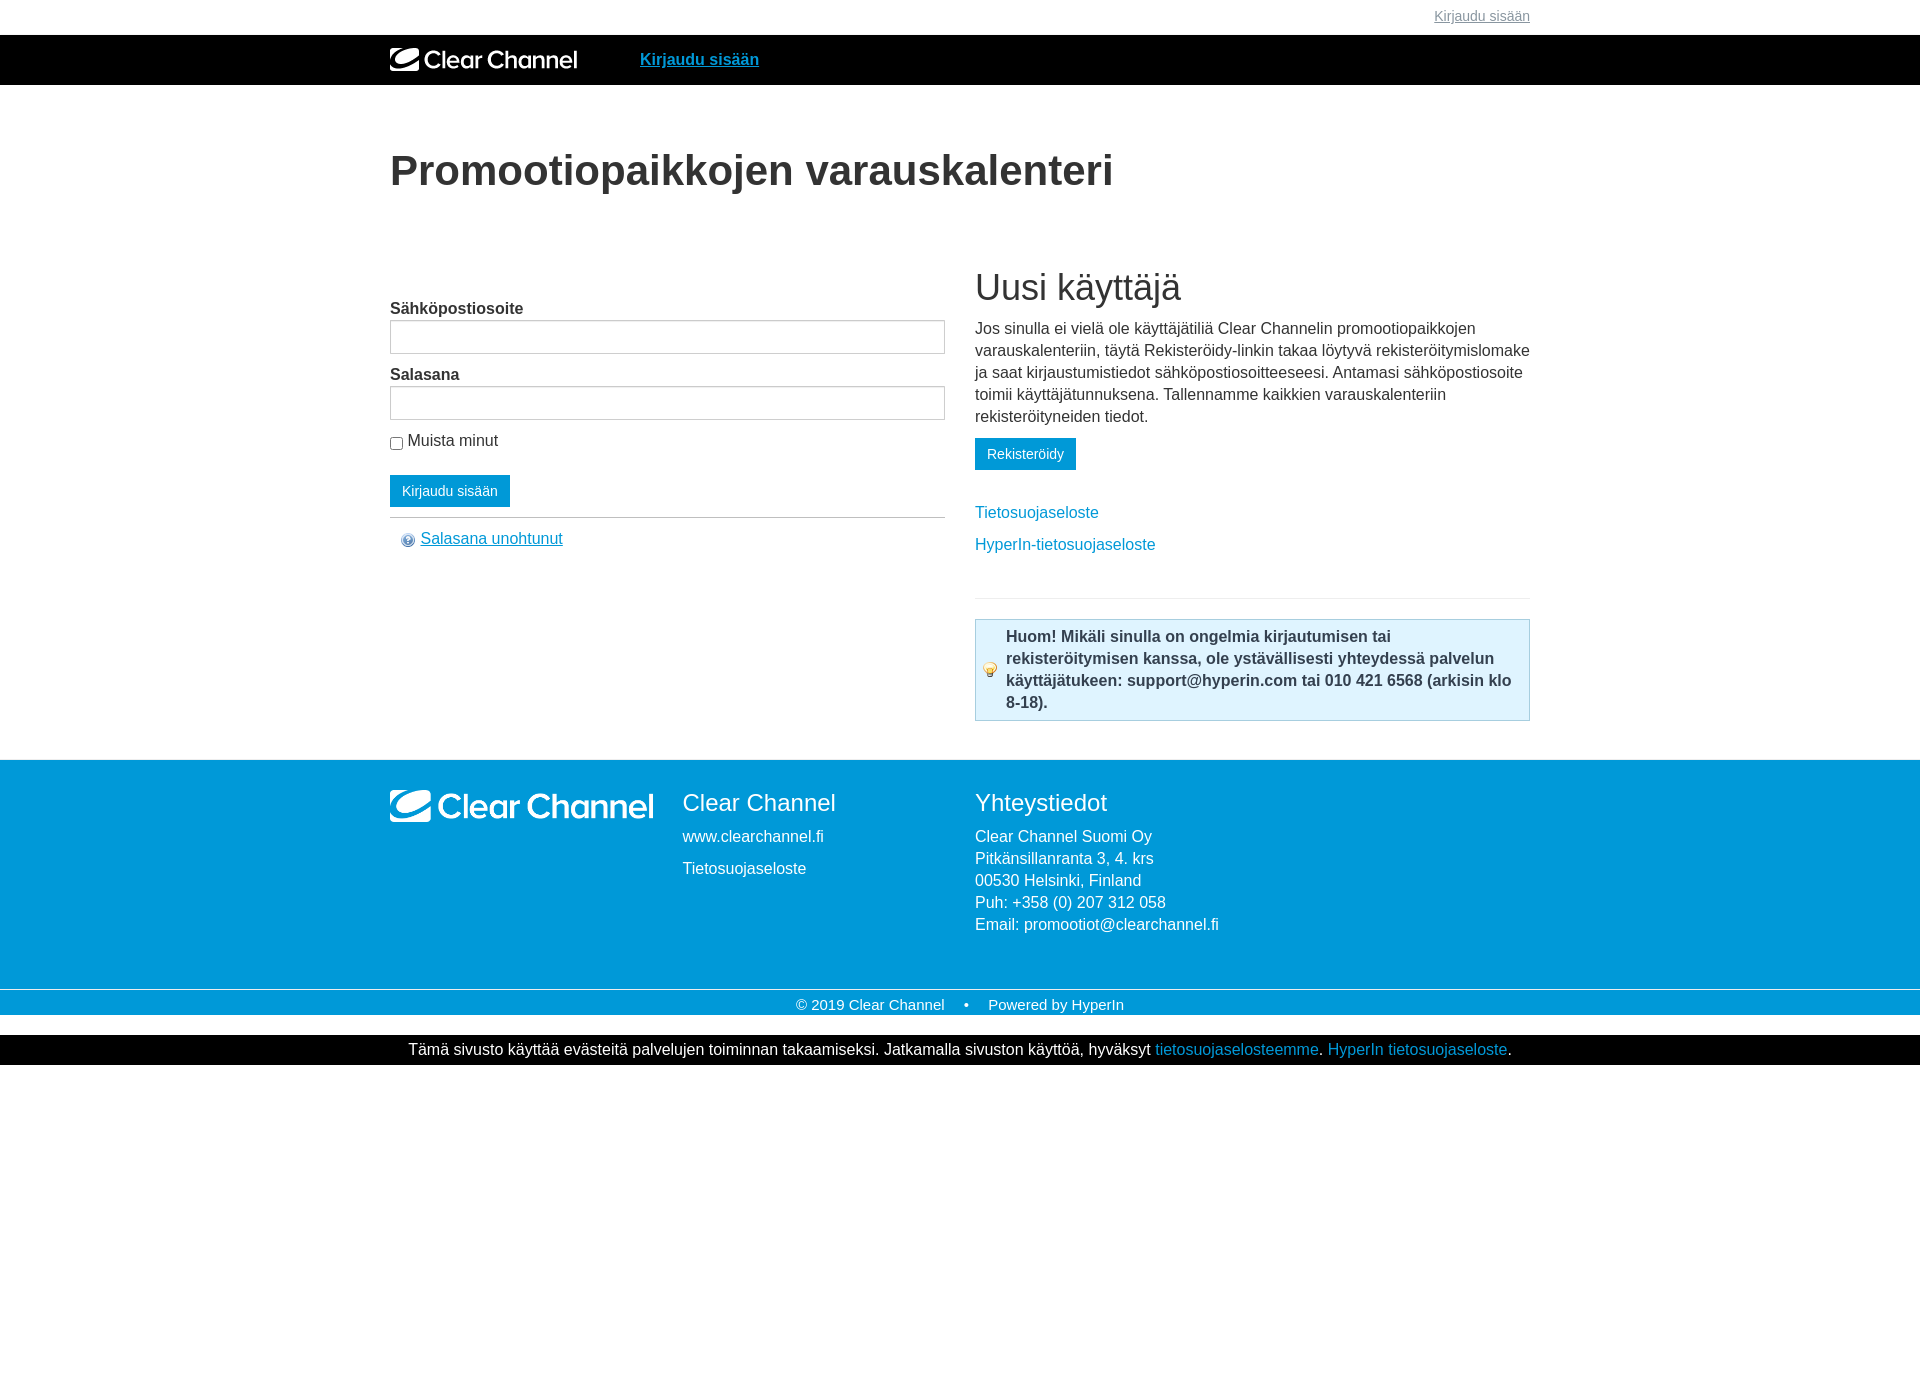 Skärmdump för promootiopaikat.fi